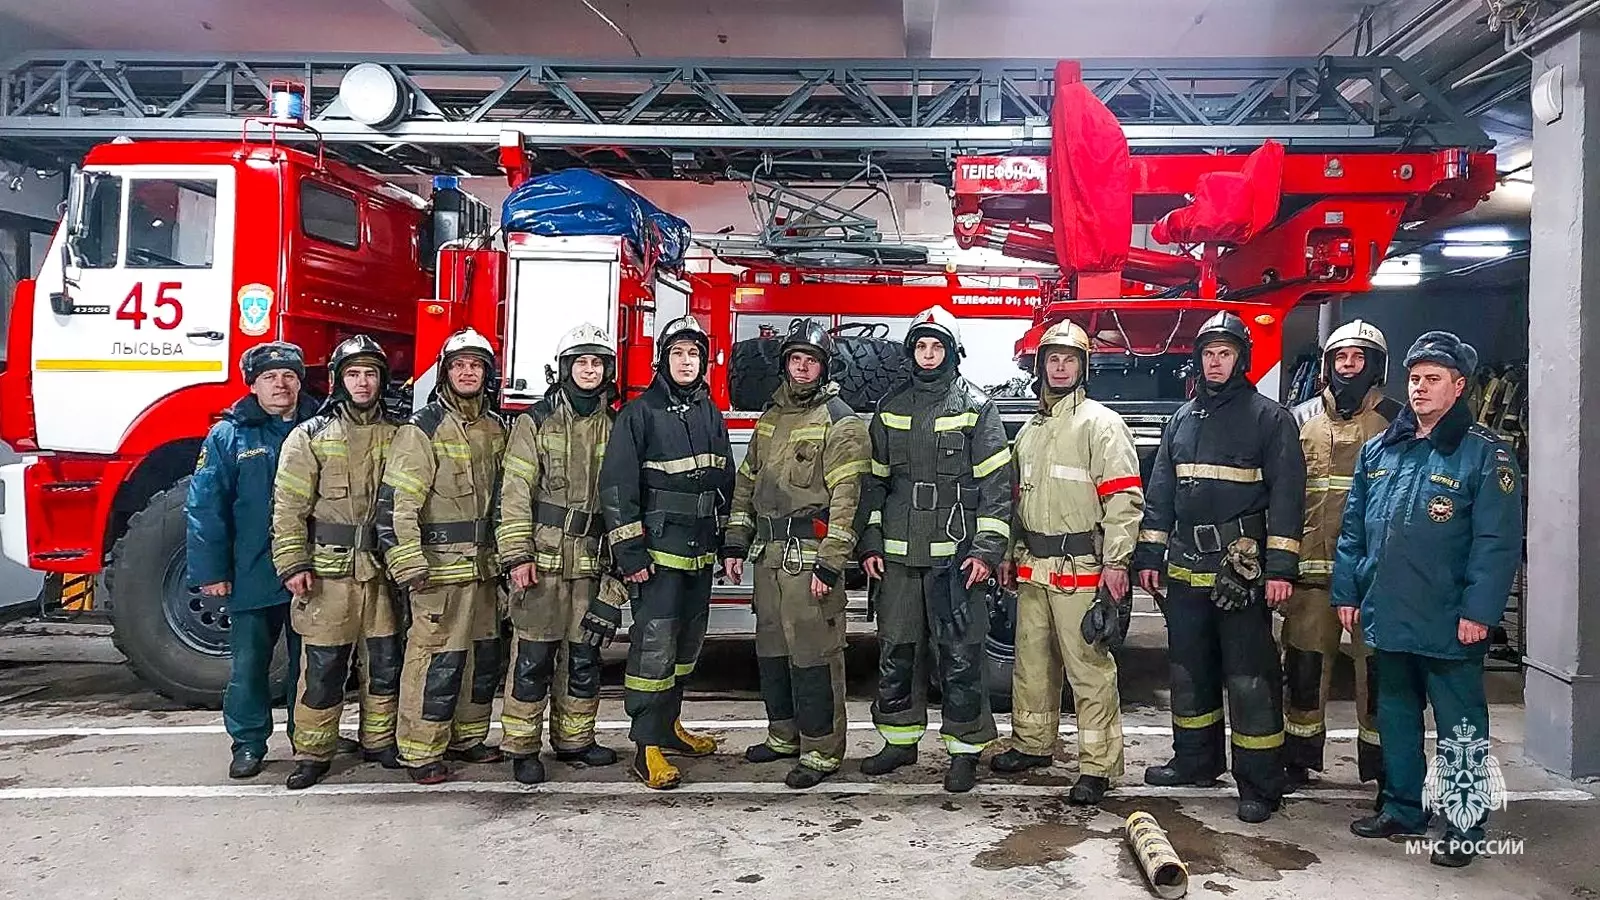 В Пермском крае пожарные спасли семь человек